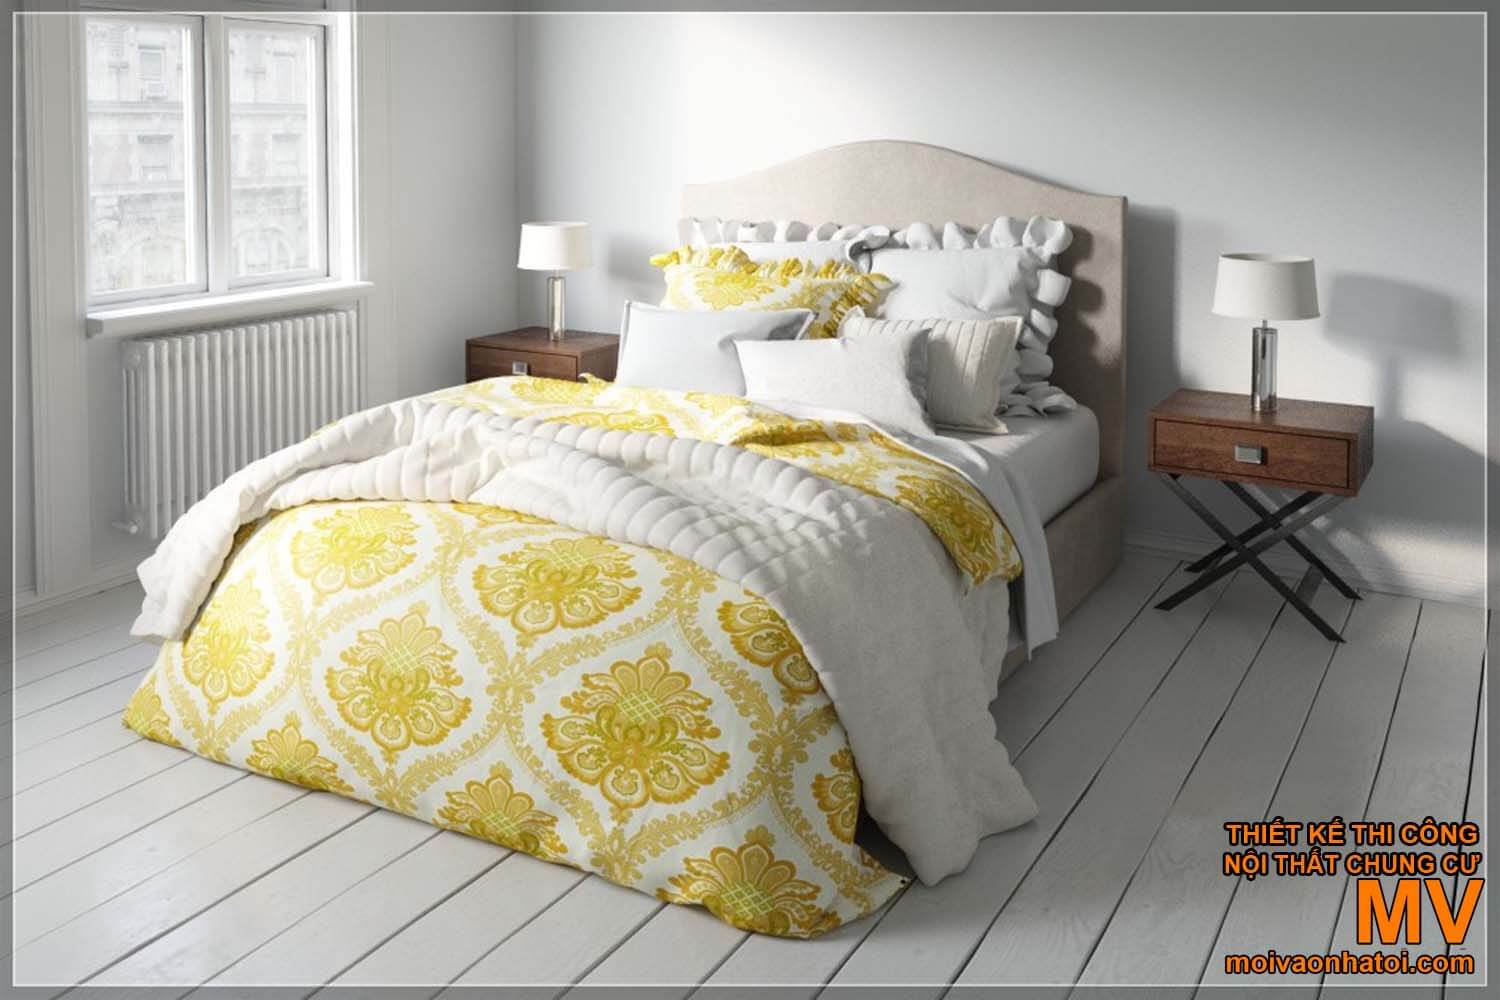 Bedroom design - decorated Scandinavian beds